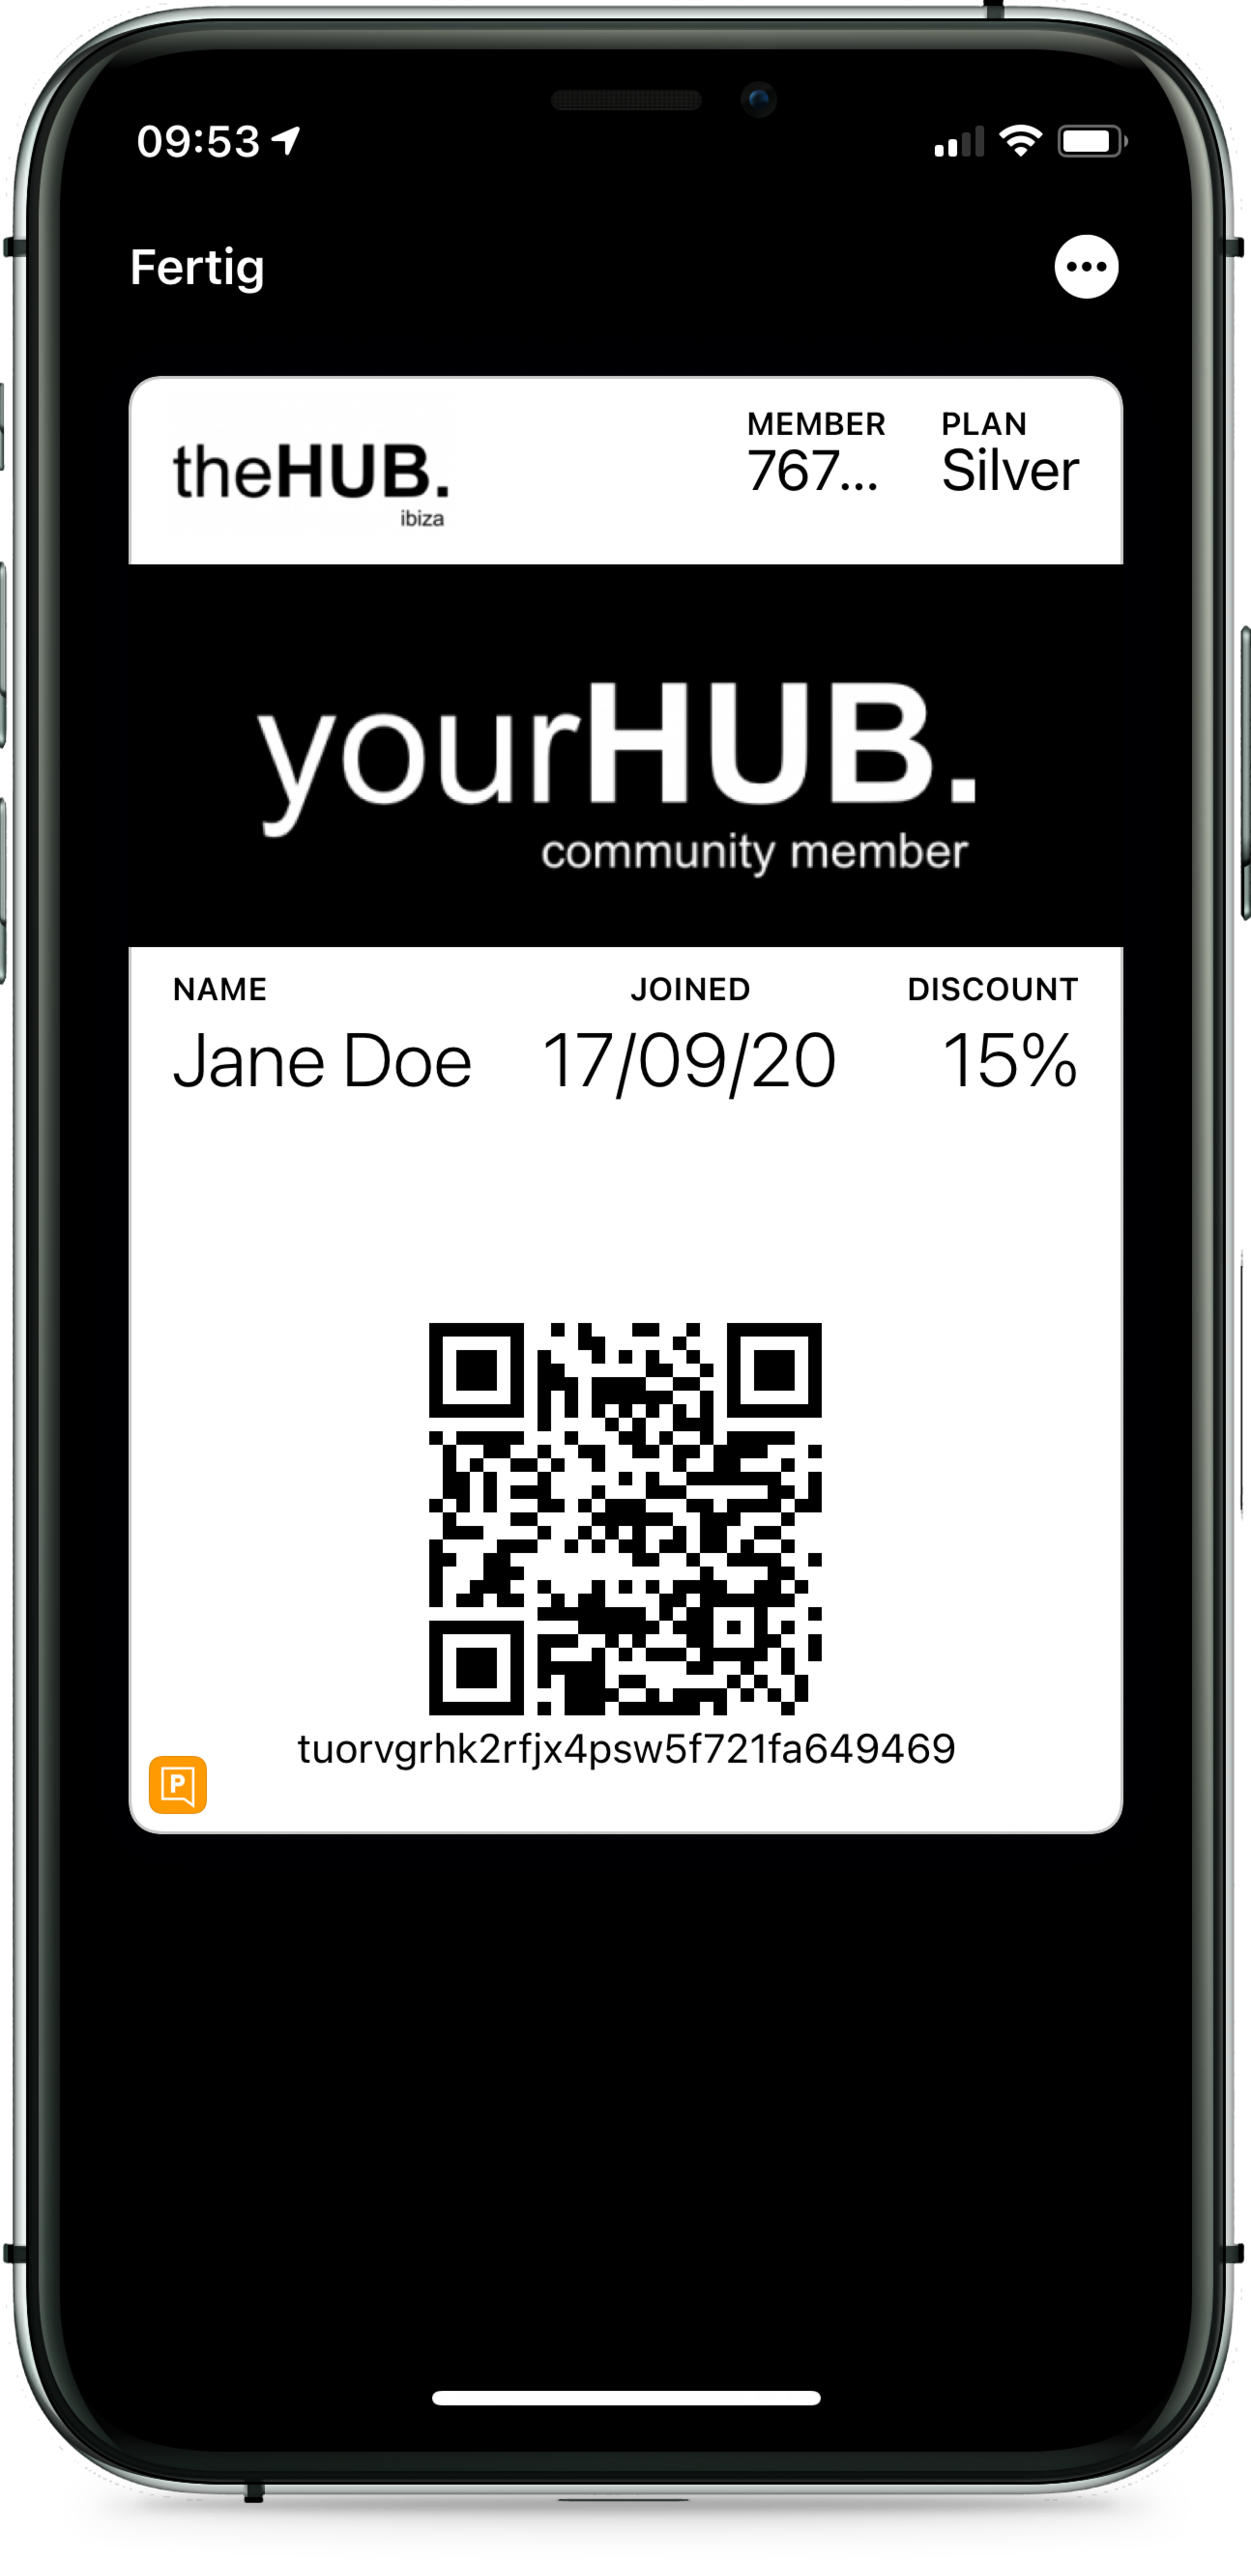 theHUB. membership Wallet card - Front